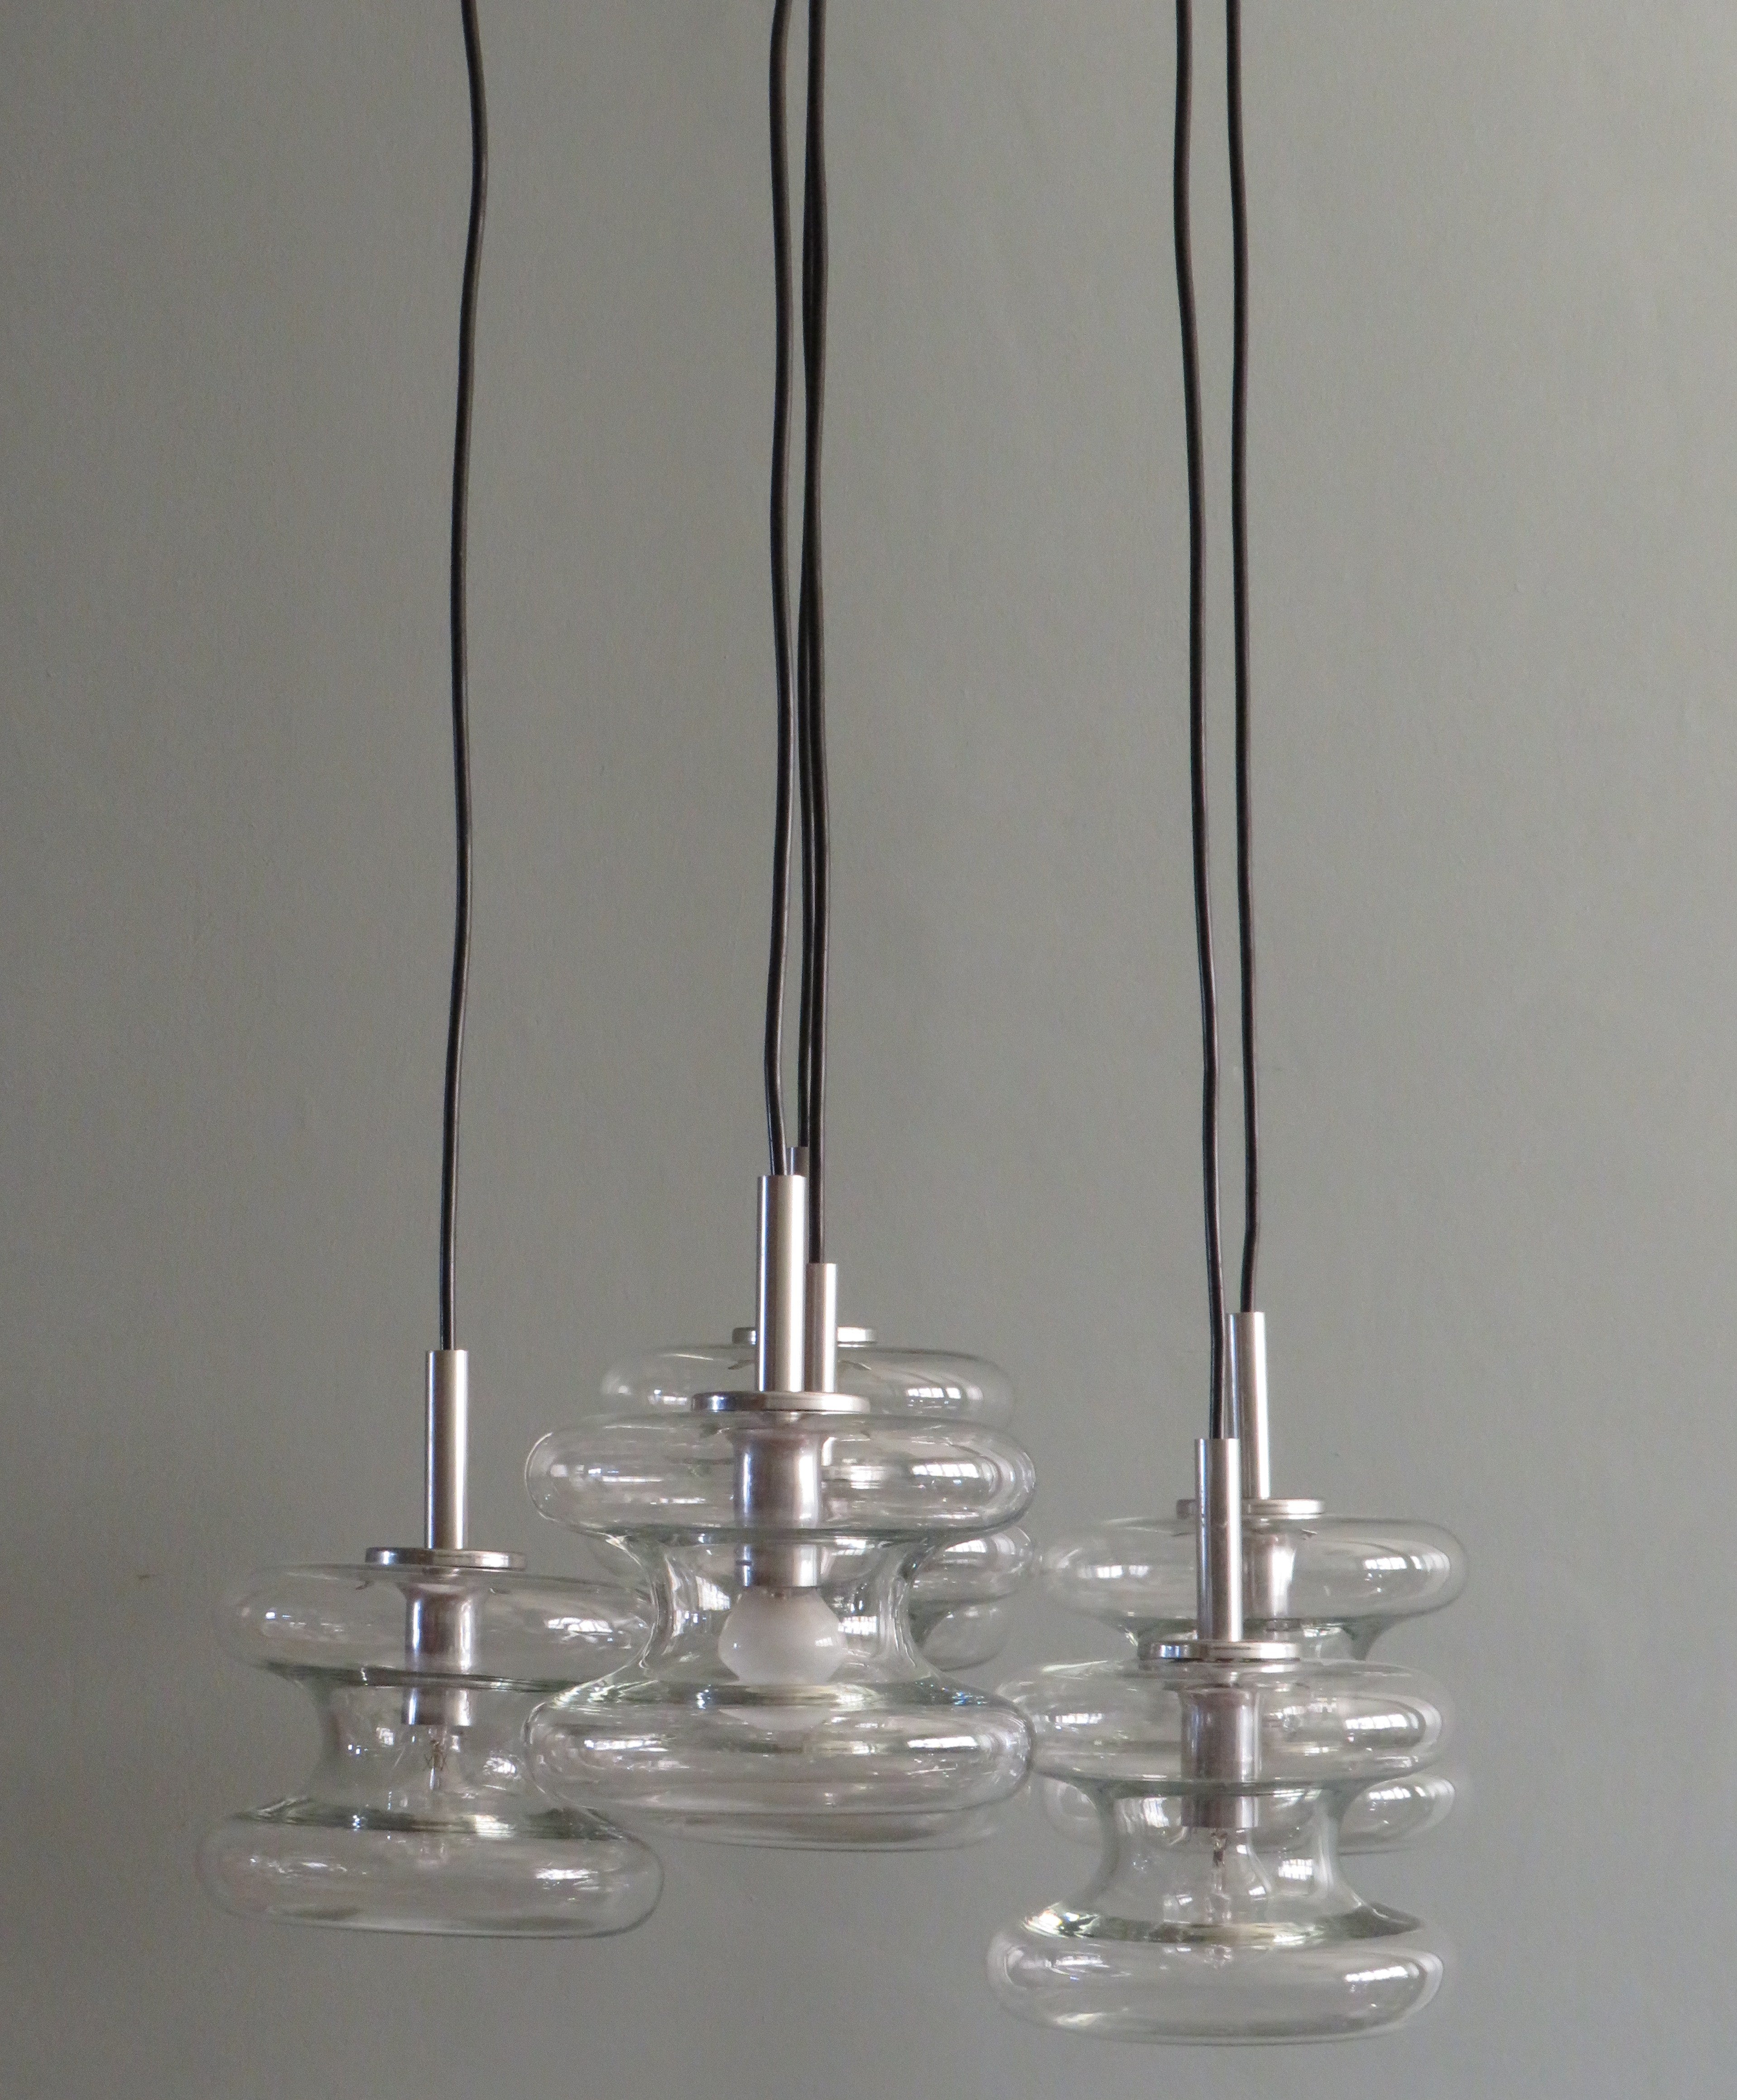 Kaskaden-Kronleuchter aus der Mitte des Jahrhunderts von Doria Leuchten, Deutschland, 1960er Jahre.
Dieser bemerkenswerte Kronleuchter hat 6 separate Lichtpunkte mit geschlossenen Glasschirmen.
Die Länge der Lichter kann individuell auf die von